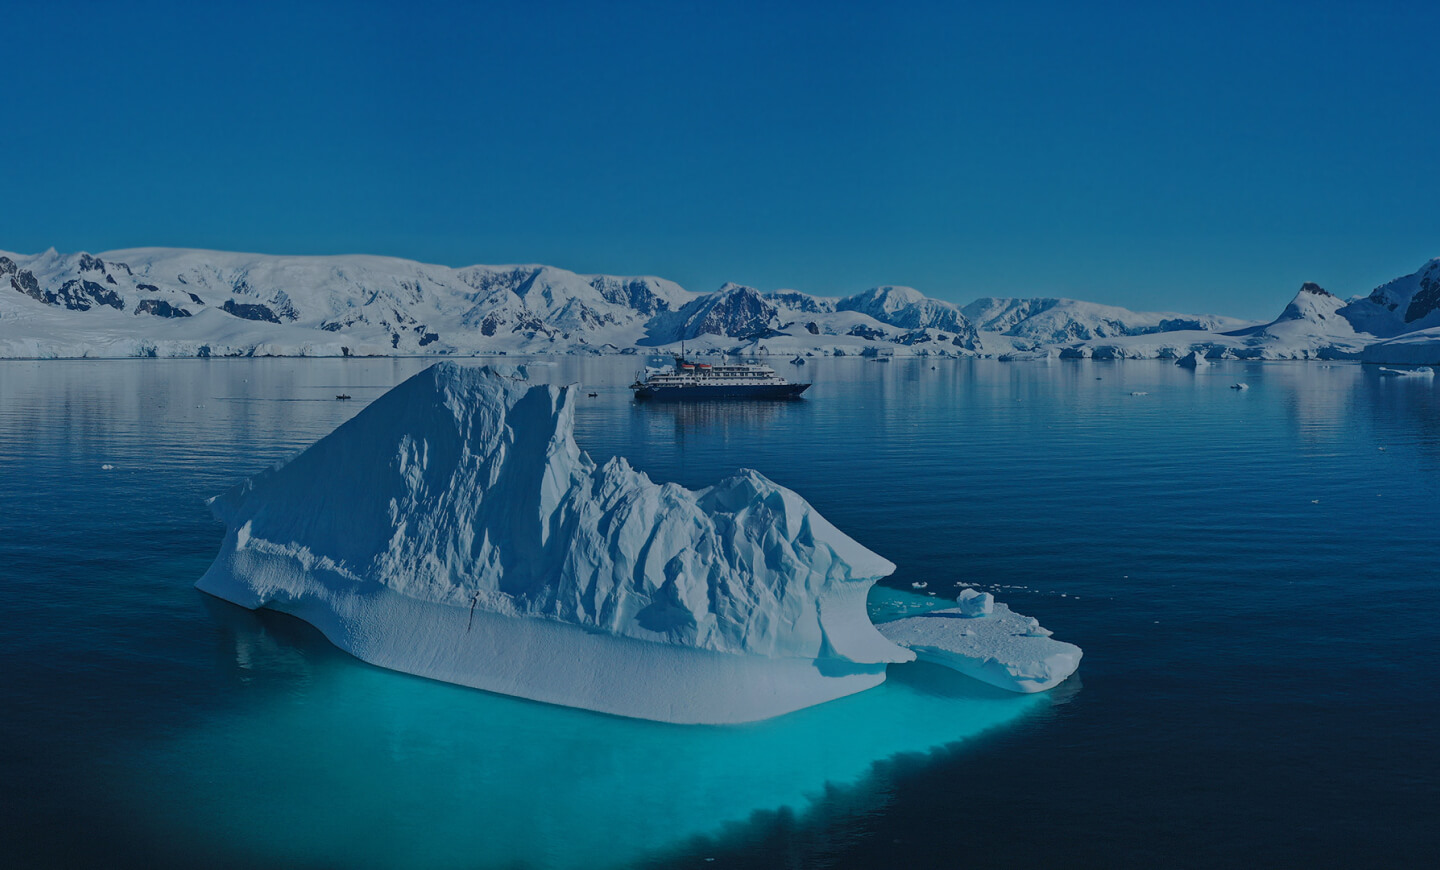 Самые красивые ледяные скульптуры – айсберги | Полярные экспедиционные круизы с Poseidon Expeditions